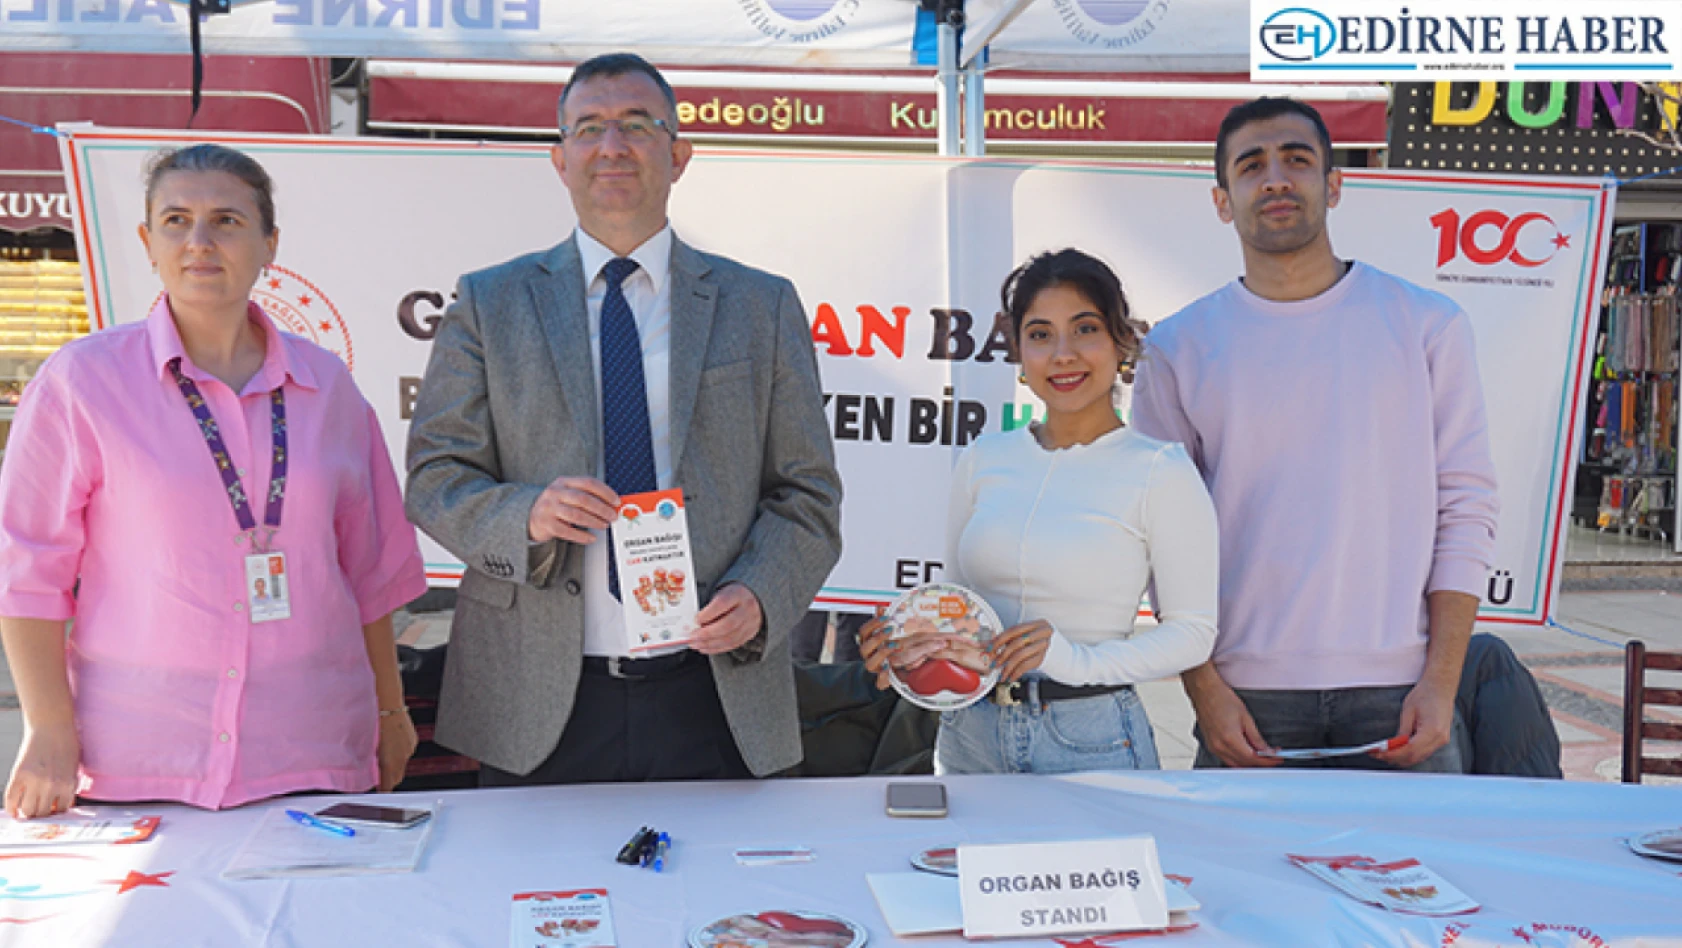 Edirne'de 'Organ ve Doku Bağış Haftası' dolayısıyla stant açıldı